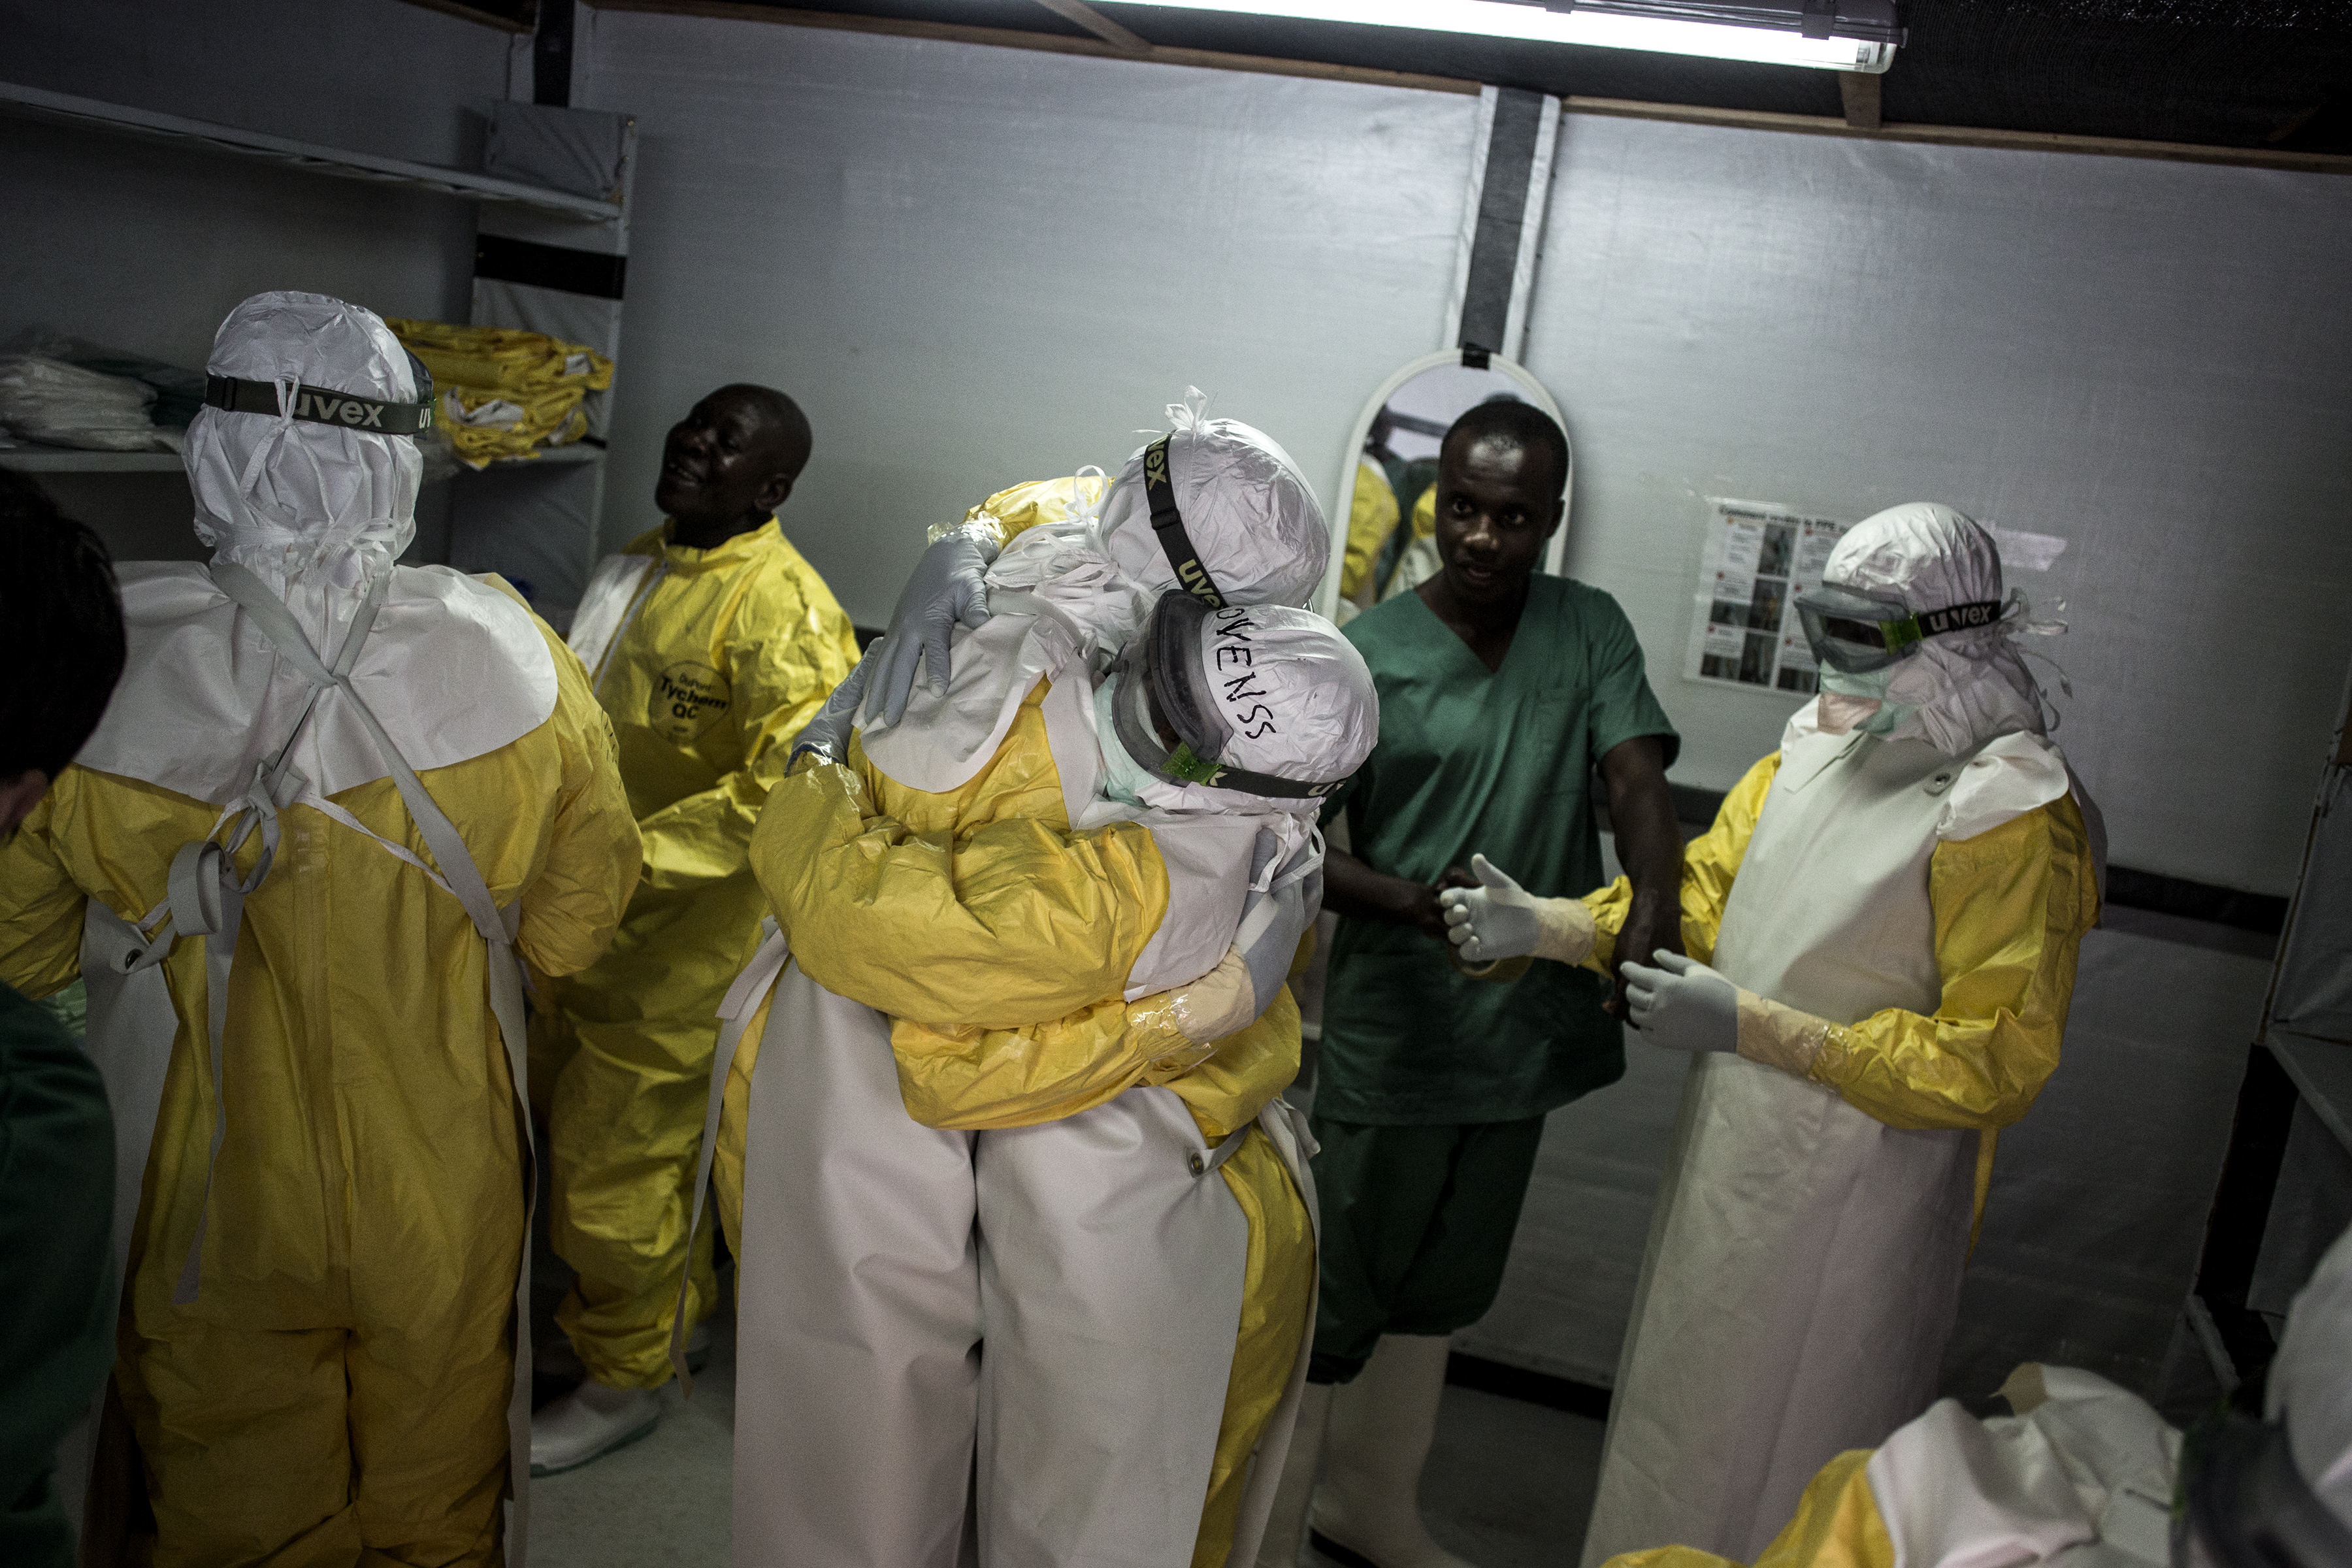 Les travailleurs de la santé dans leur équipement de protection personnel se prennent dans les bras avant de se rendre dans la zone rouge du centre de traitement Ebola géré par MSF à Bunia. C’est la 10e épidémie d'Ebola en RDC. Avec plus de 300 cas confirmés et près de 200 morts, elle est devenue la plus grave jamais connue par le pays. © John Wessels, 7 novembre 2018